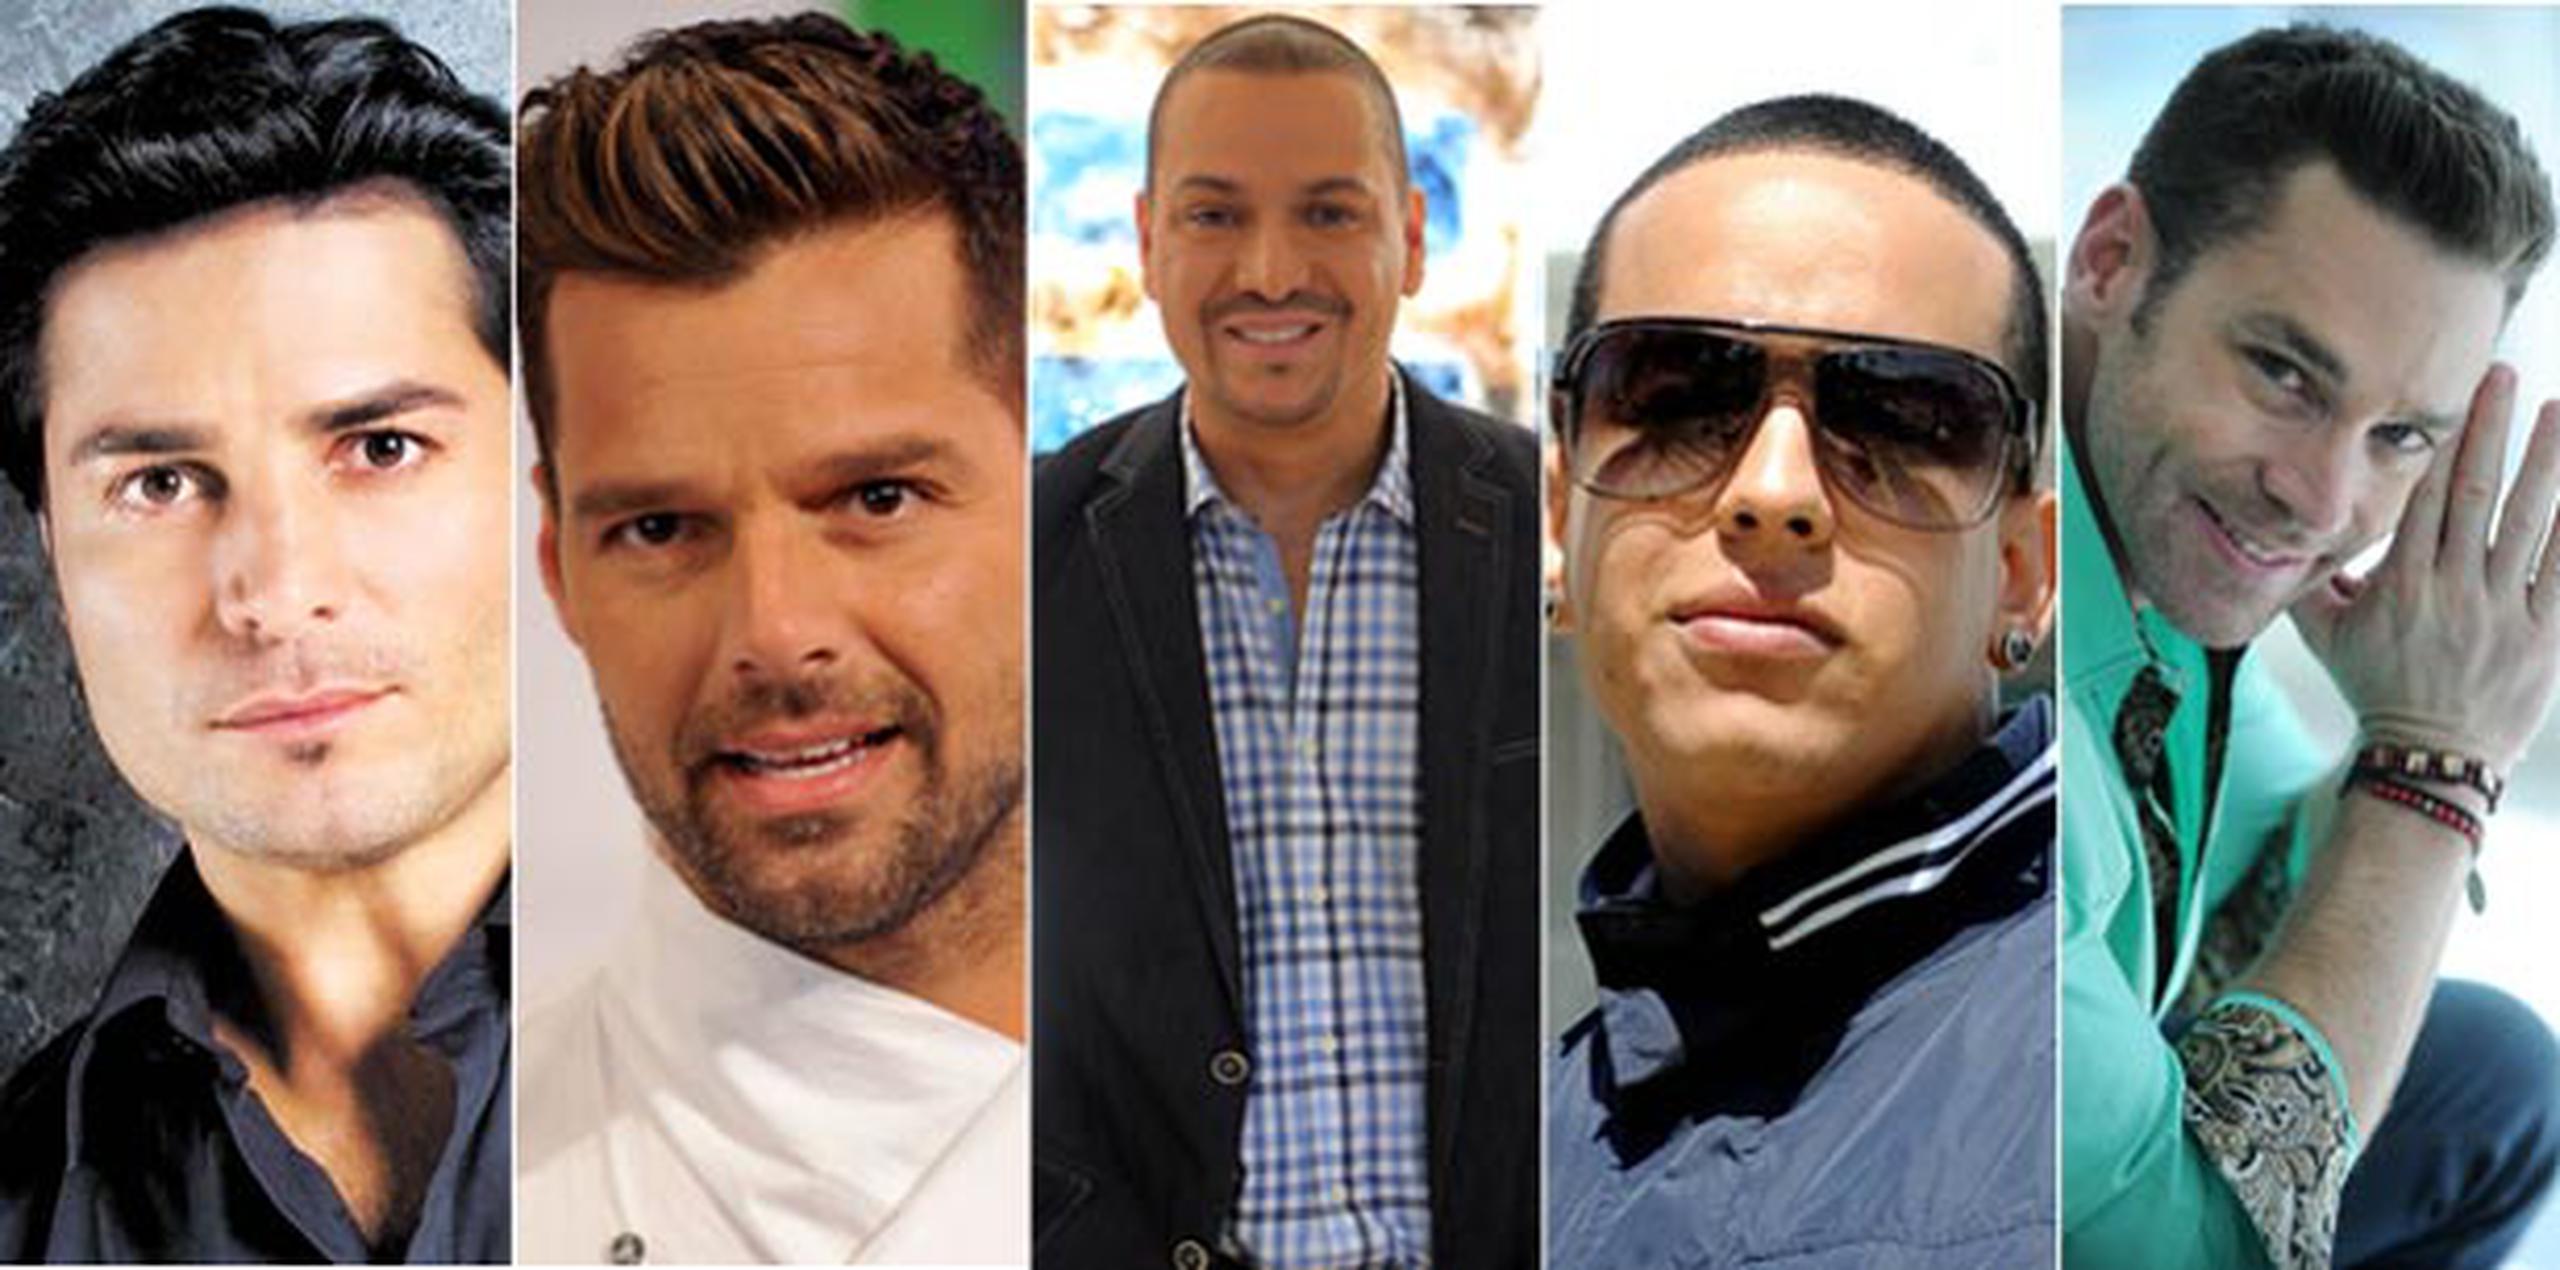 Chayanne, Ricky Martin, Víctor Manuelle, Daddy Yankee y Jaime Mayol son los artistas boricuas más sexys. (Archivo)